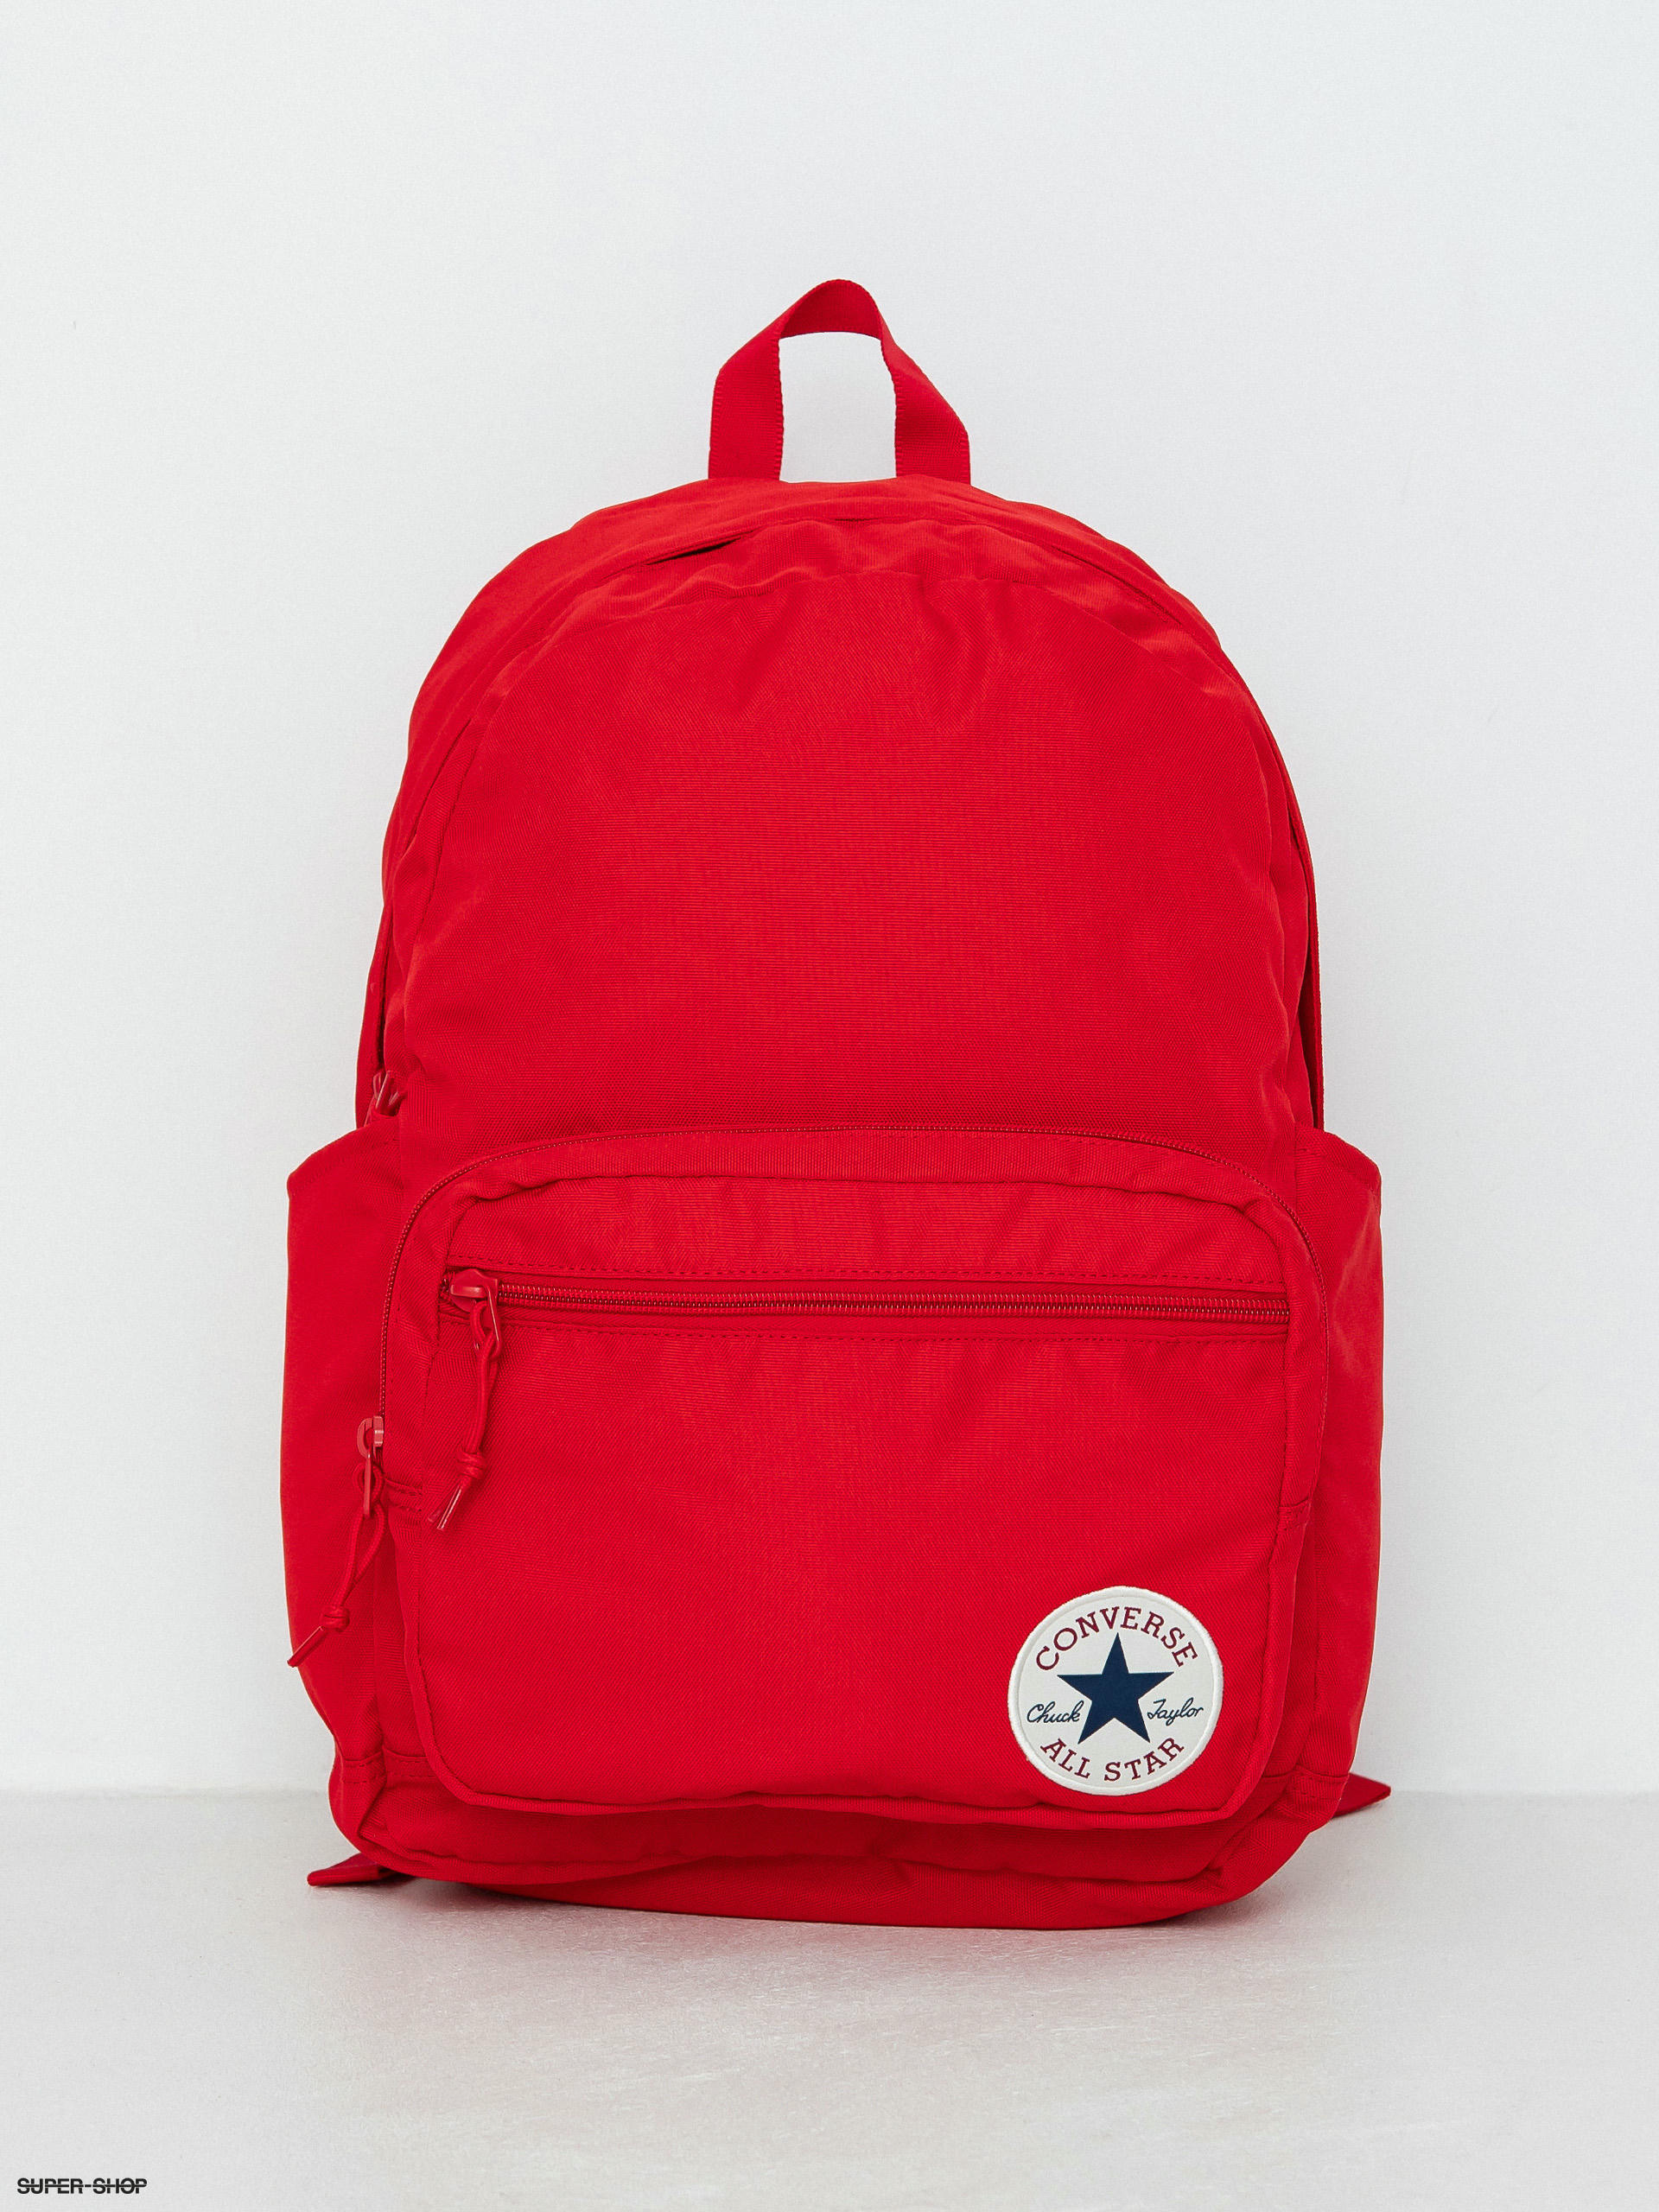 GO 2 Backpack (university red)